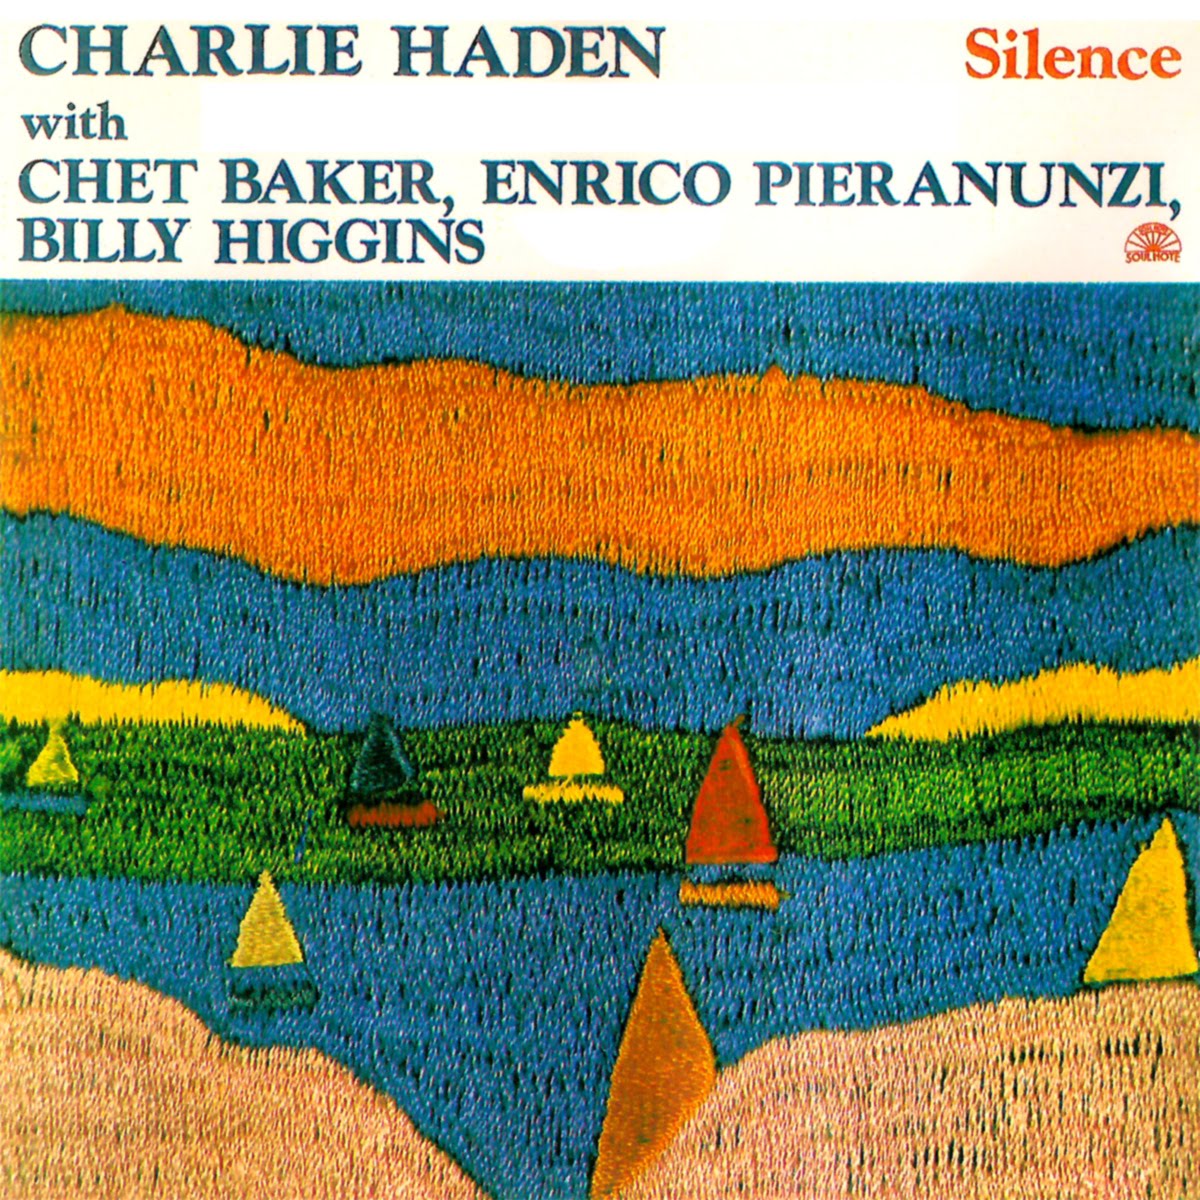 CHARLIE HADEN - Silence cover 